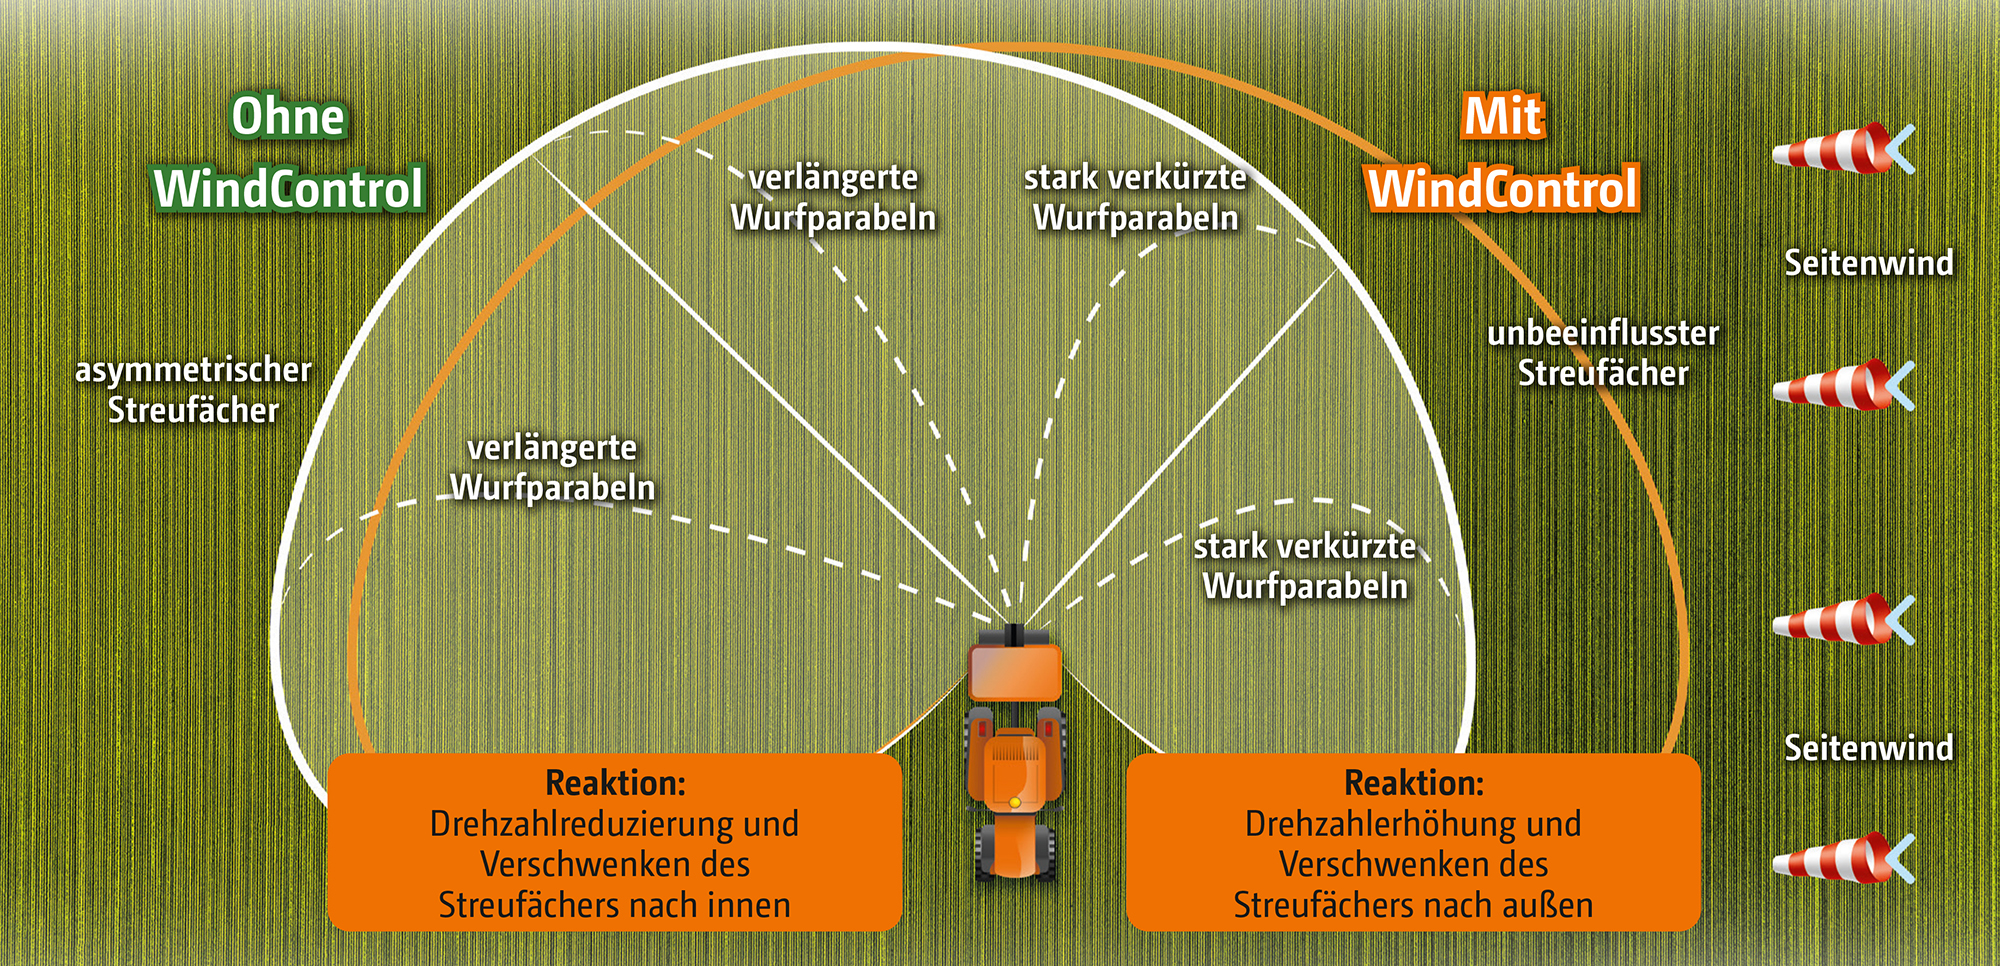 windcontrol_automatischer_ausgleich_de_GO